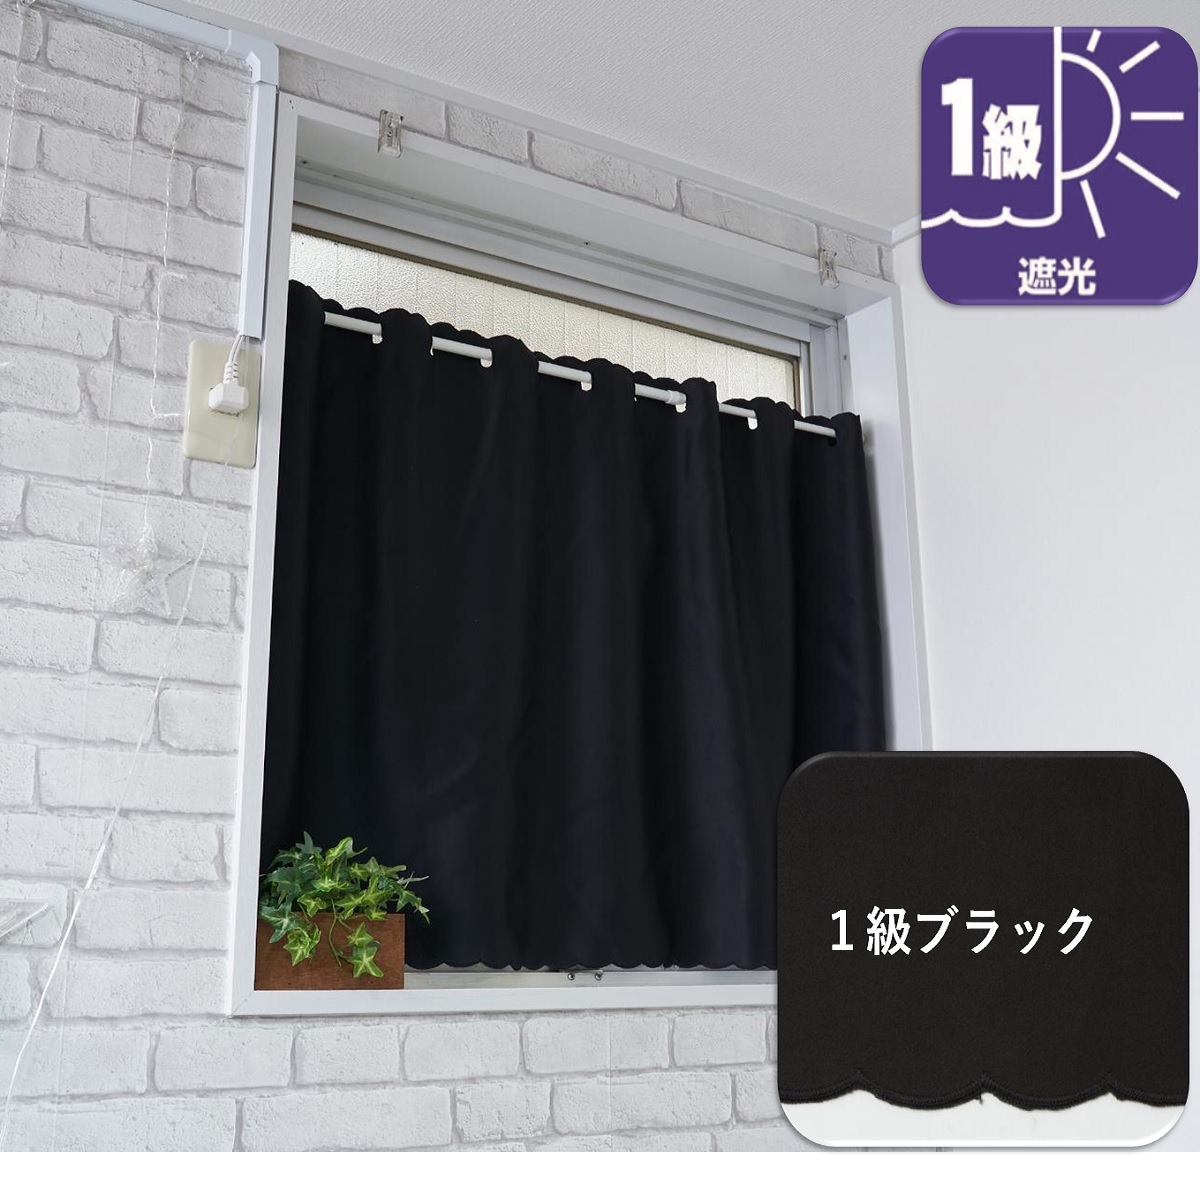 カフェカーテン 遮光 北欧 小窓  おしゃれ 安い UV 防炎 幅100 丈45cm